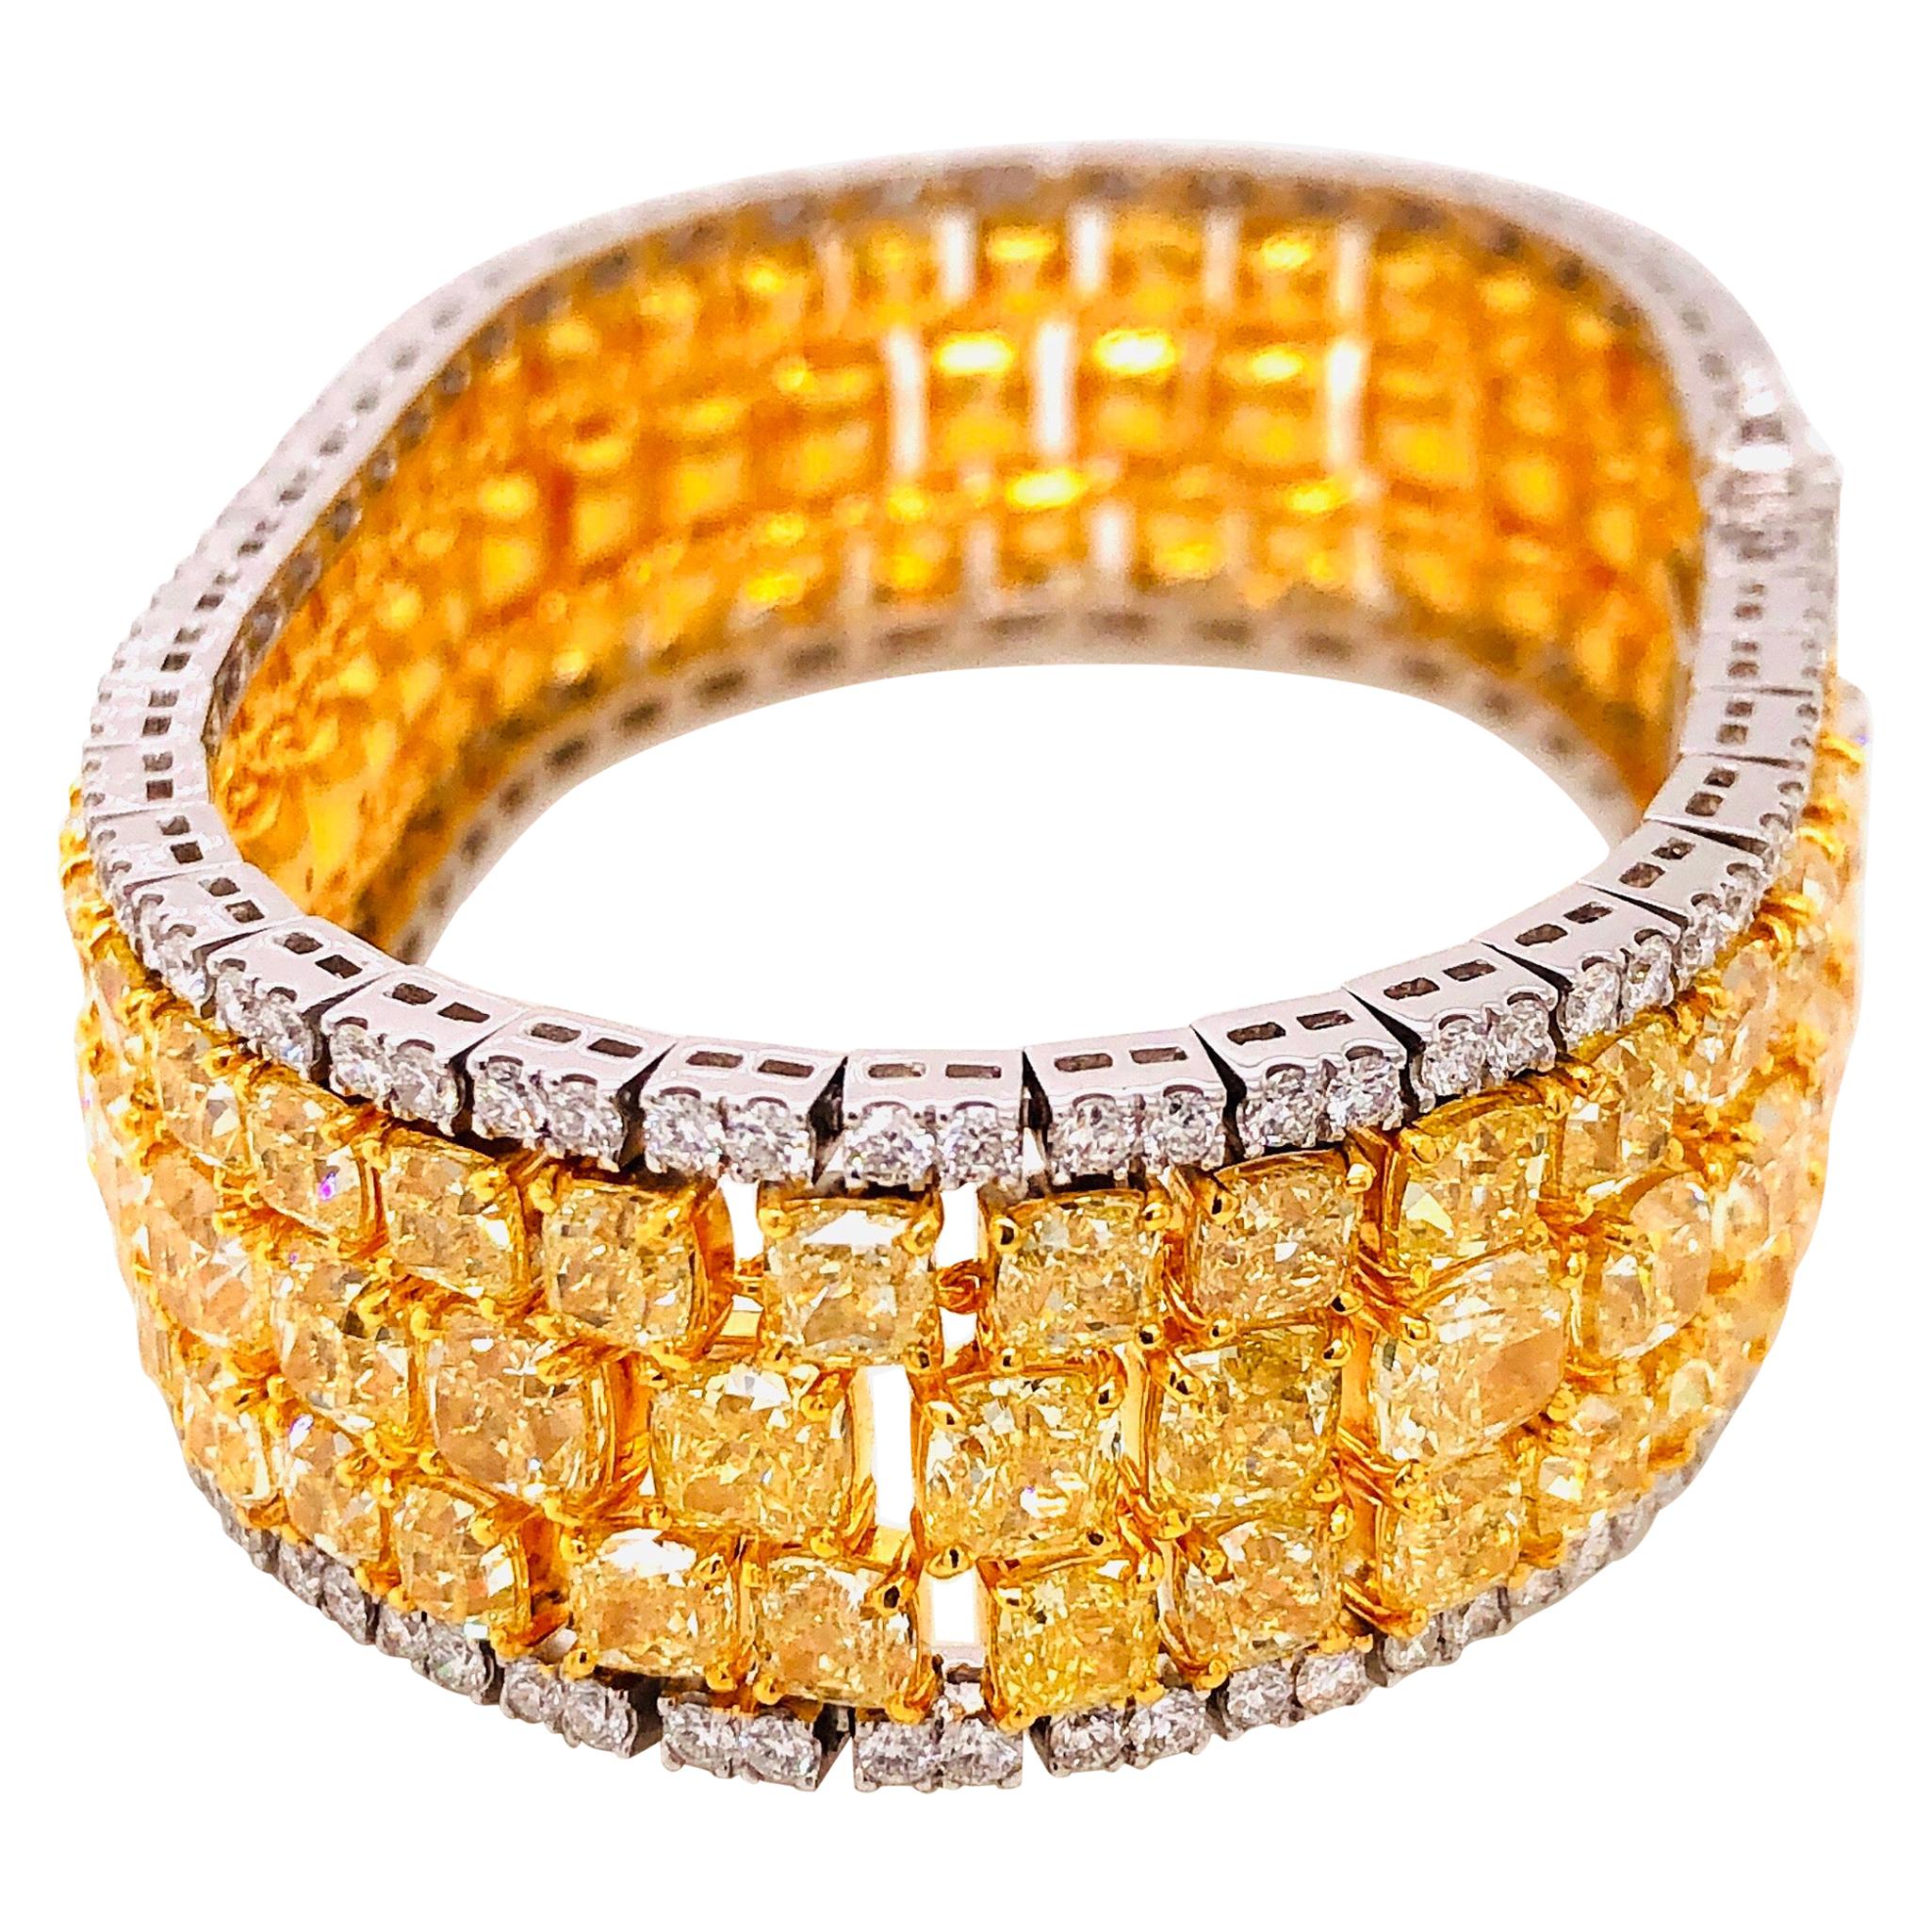 Ein umwerfendes Armband aus naturgelben Diamanten mit einem Gesamtgewicht von ca. 46,81ct. Misst 1,80 cm breit oder 3/4 eines Zolls und 7 Zoll lang. Der Farbton und die Sättigung stellen sich unserer Meinung nach nach dem Aushärten als besonders